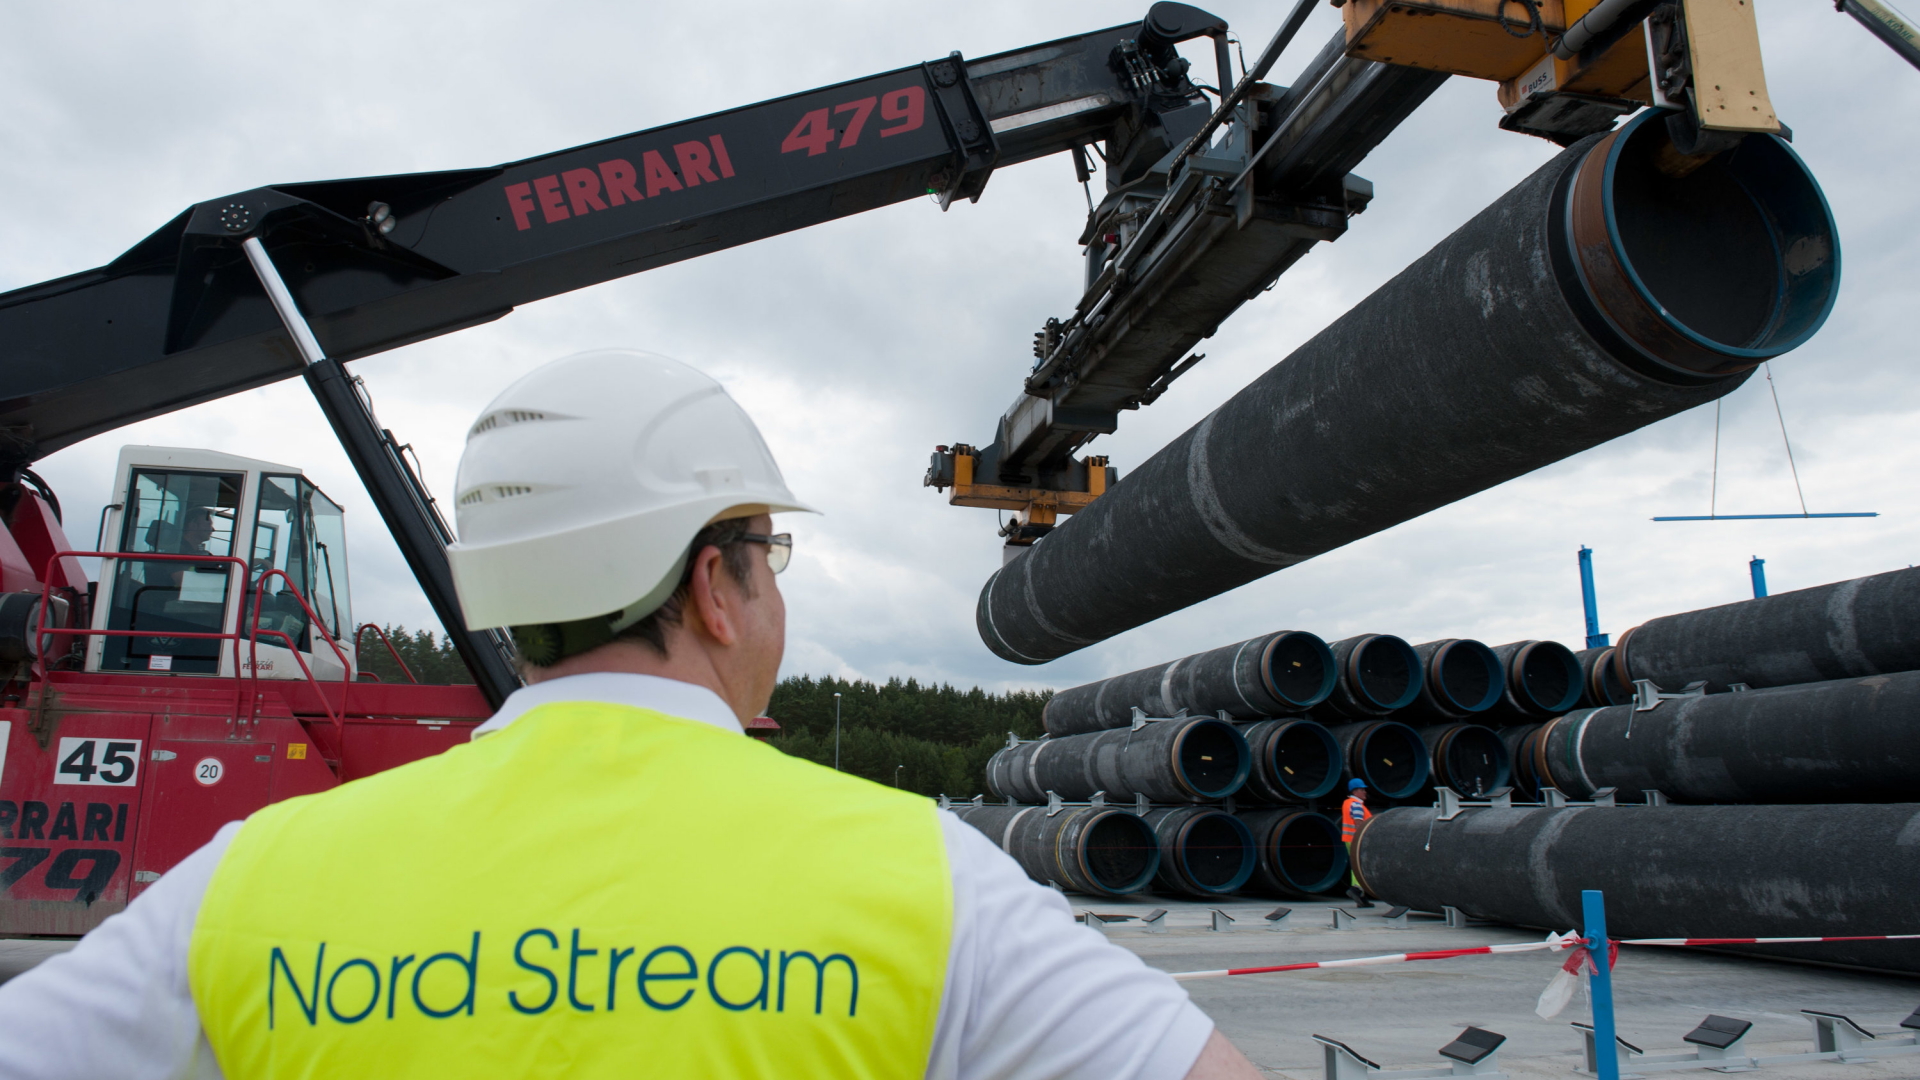 Am Anlandepunkt der Nord Stream-Ostseepipeline werden Ersatzstahlrohre für die Pipeline eingelagert (Archivbild). | dpa